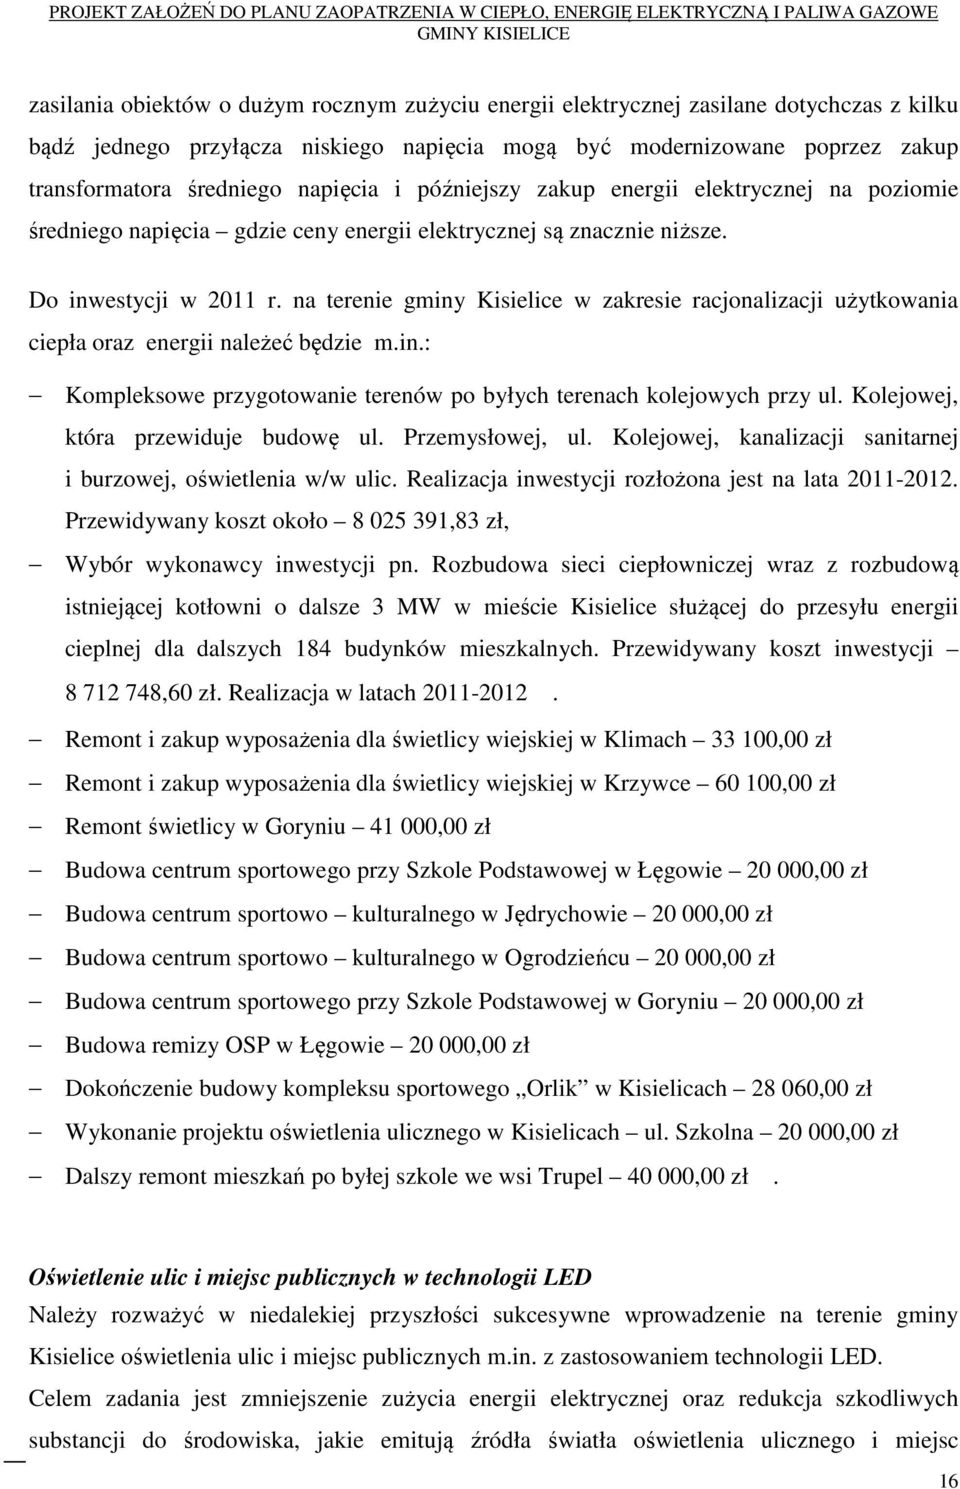 na terenie gminy Kisielice w zakresie racjonalizacji użytkowania ciepła oraz energii należeć będzie m.in.: Kompleksowe przygotowanie terenów po byłych terenach kolejowych przy ul.